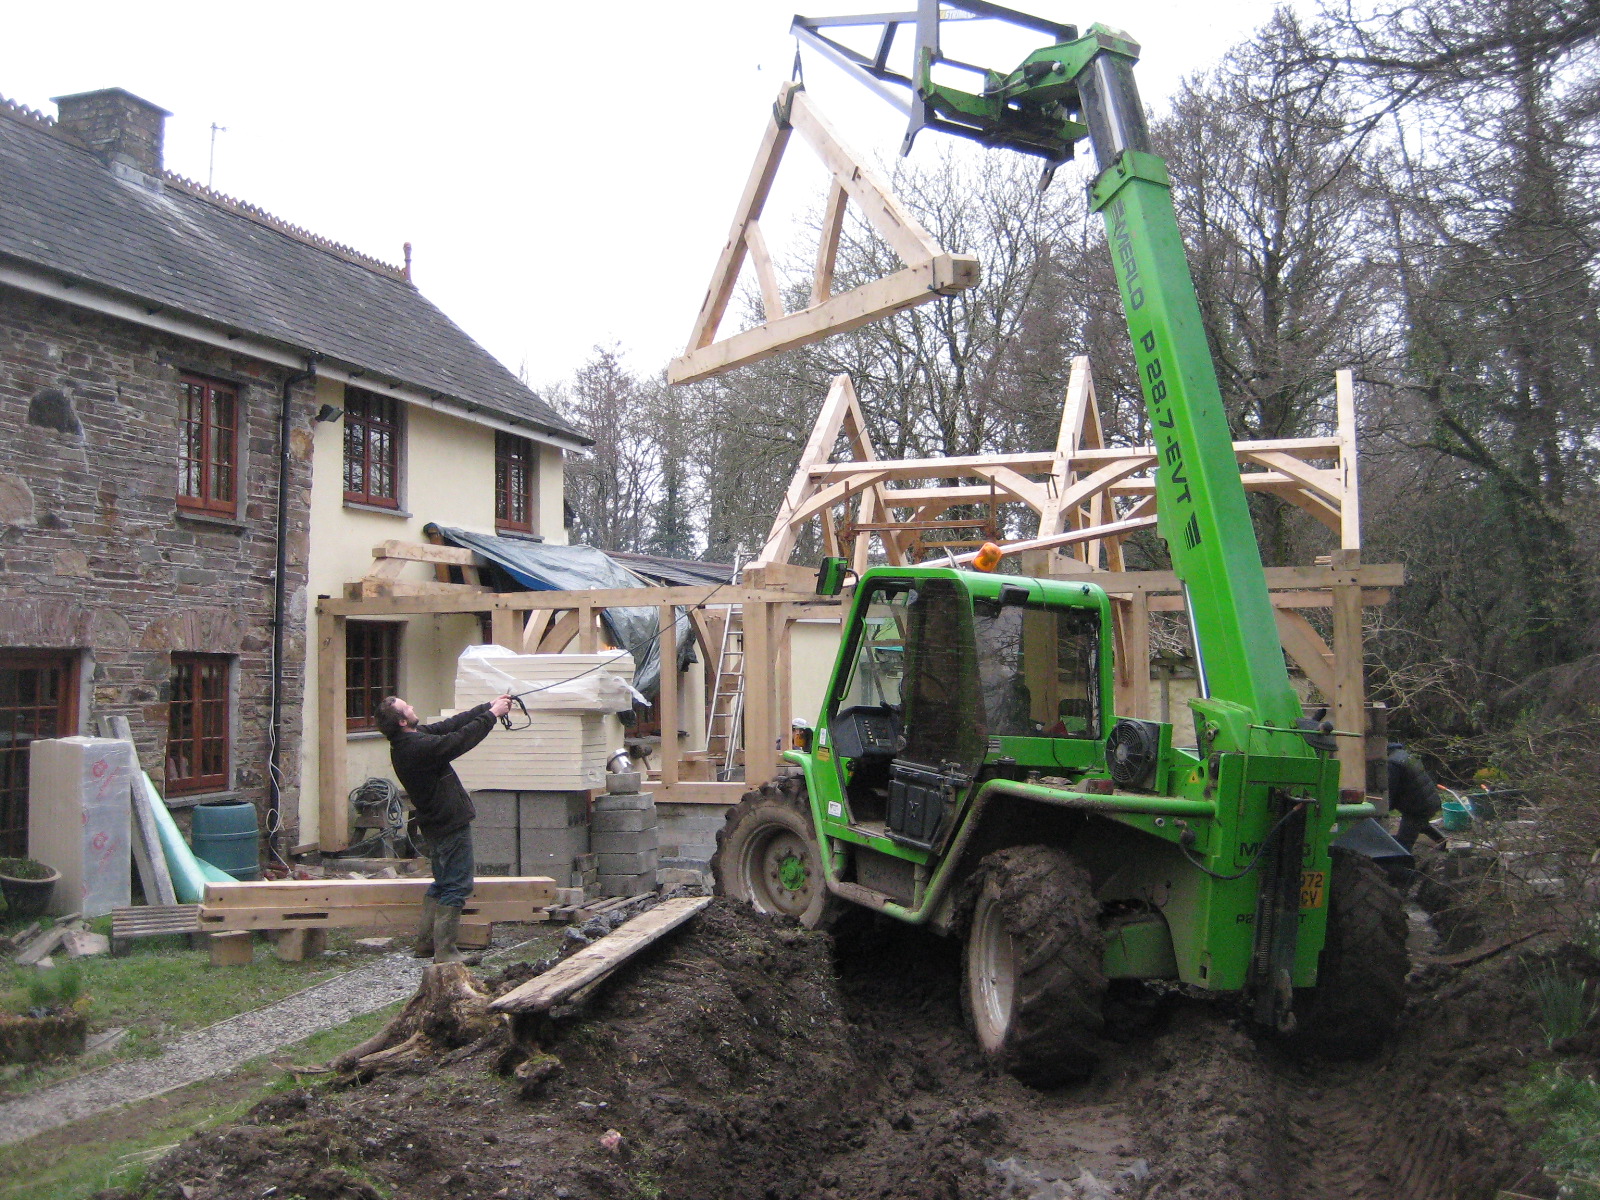 Queen post truss green oak timber frame being installed in Devon